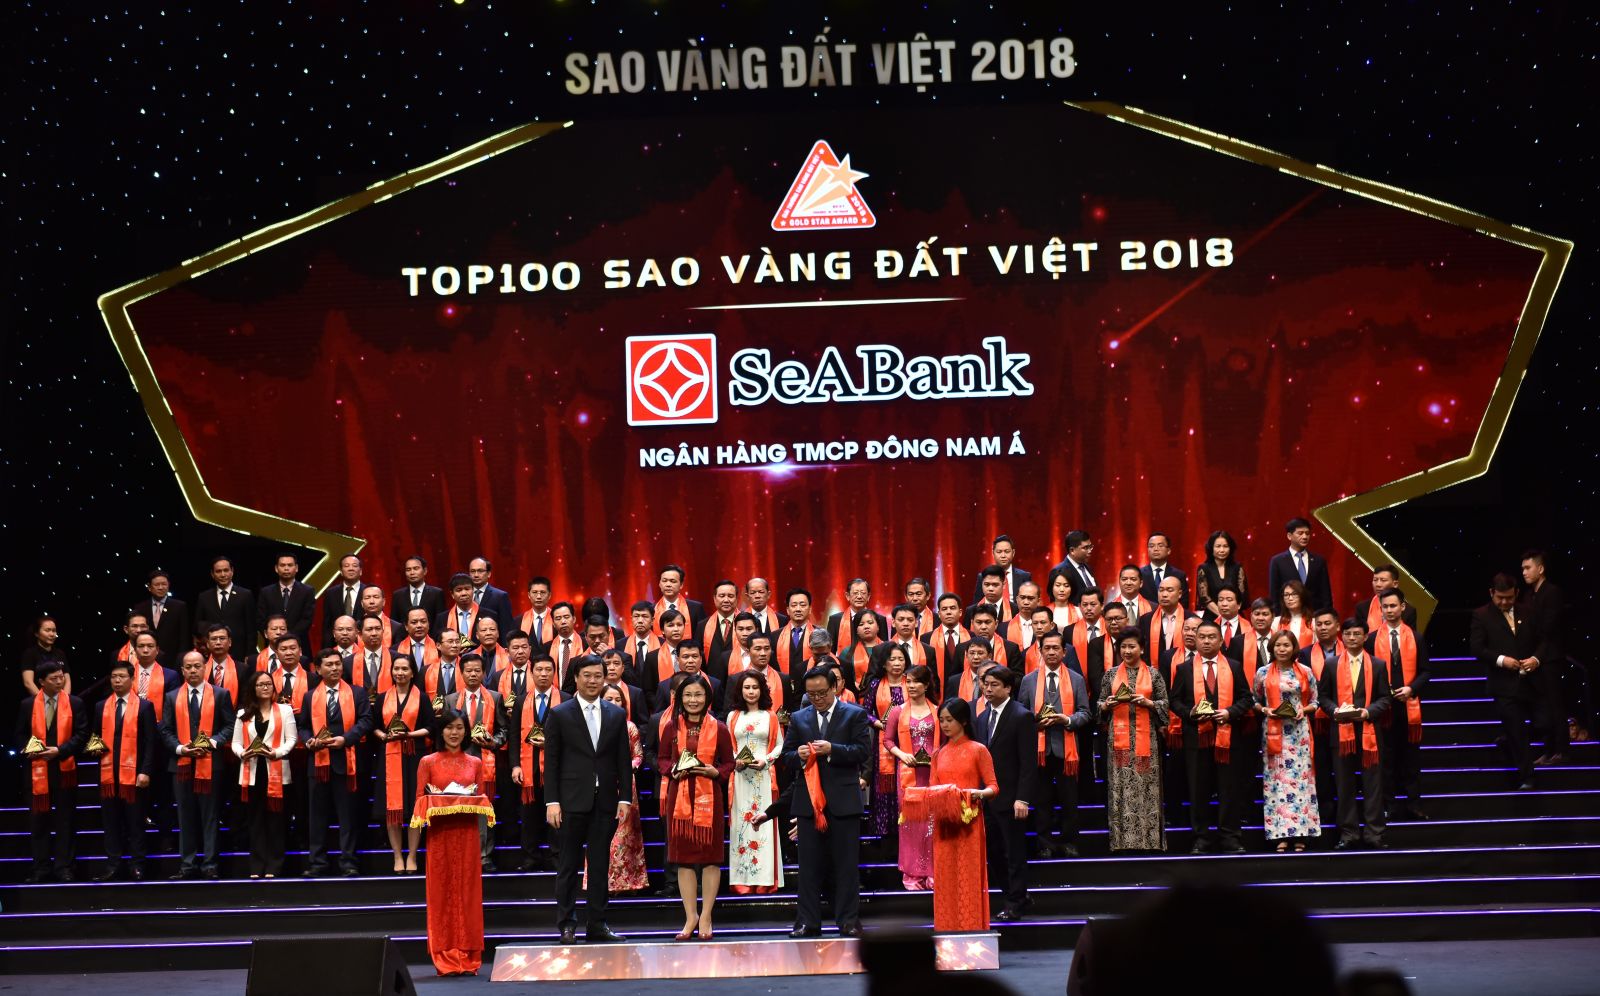 SeABank được bình chọn và trao tặng danh hiệu “Top 100 Sao Vàng đất Việt năm 2018”.